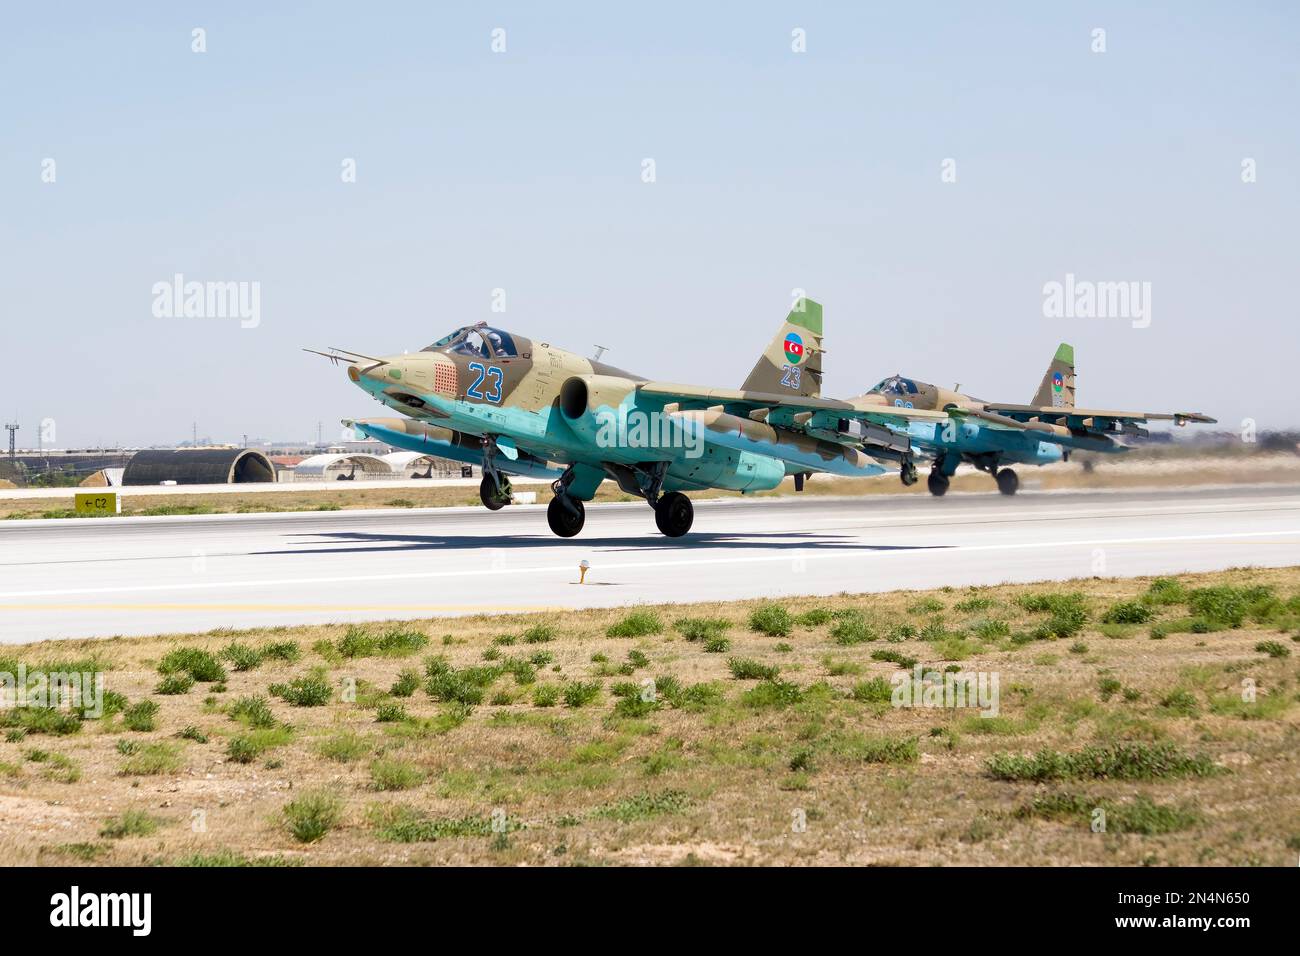 Konya, Turchia - 07 01 2021: Aquila Anatolia Azerbaijan Air Force Exercise 2021 Azerbaijan Air Force MiG 29 Fighter Jet in una posizione tassante in Kon Foto Stock